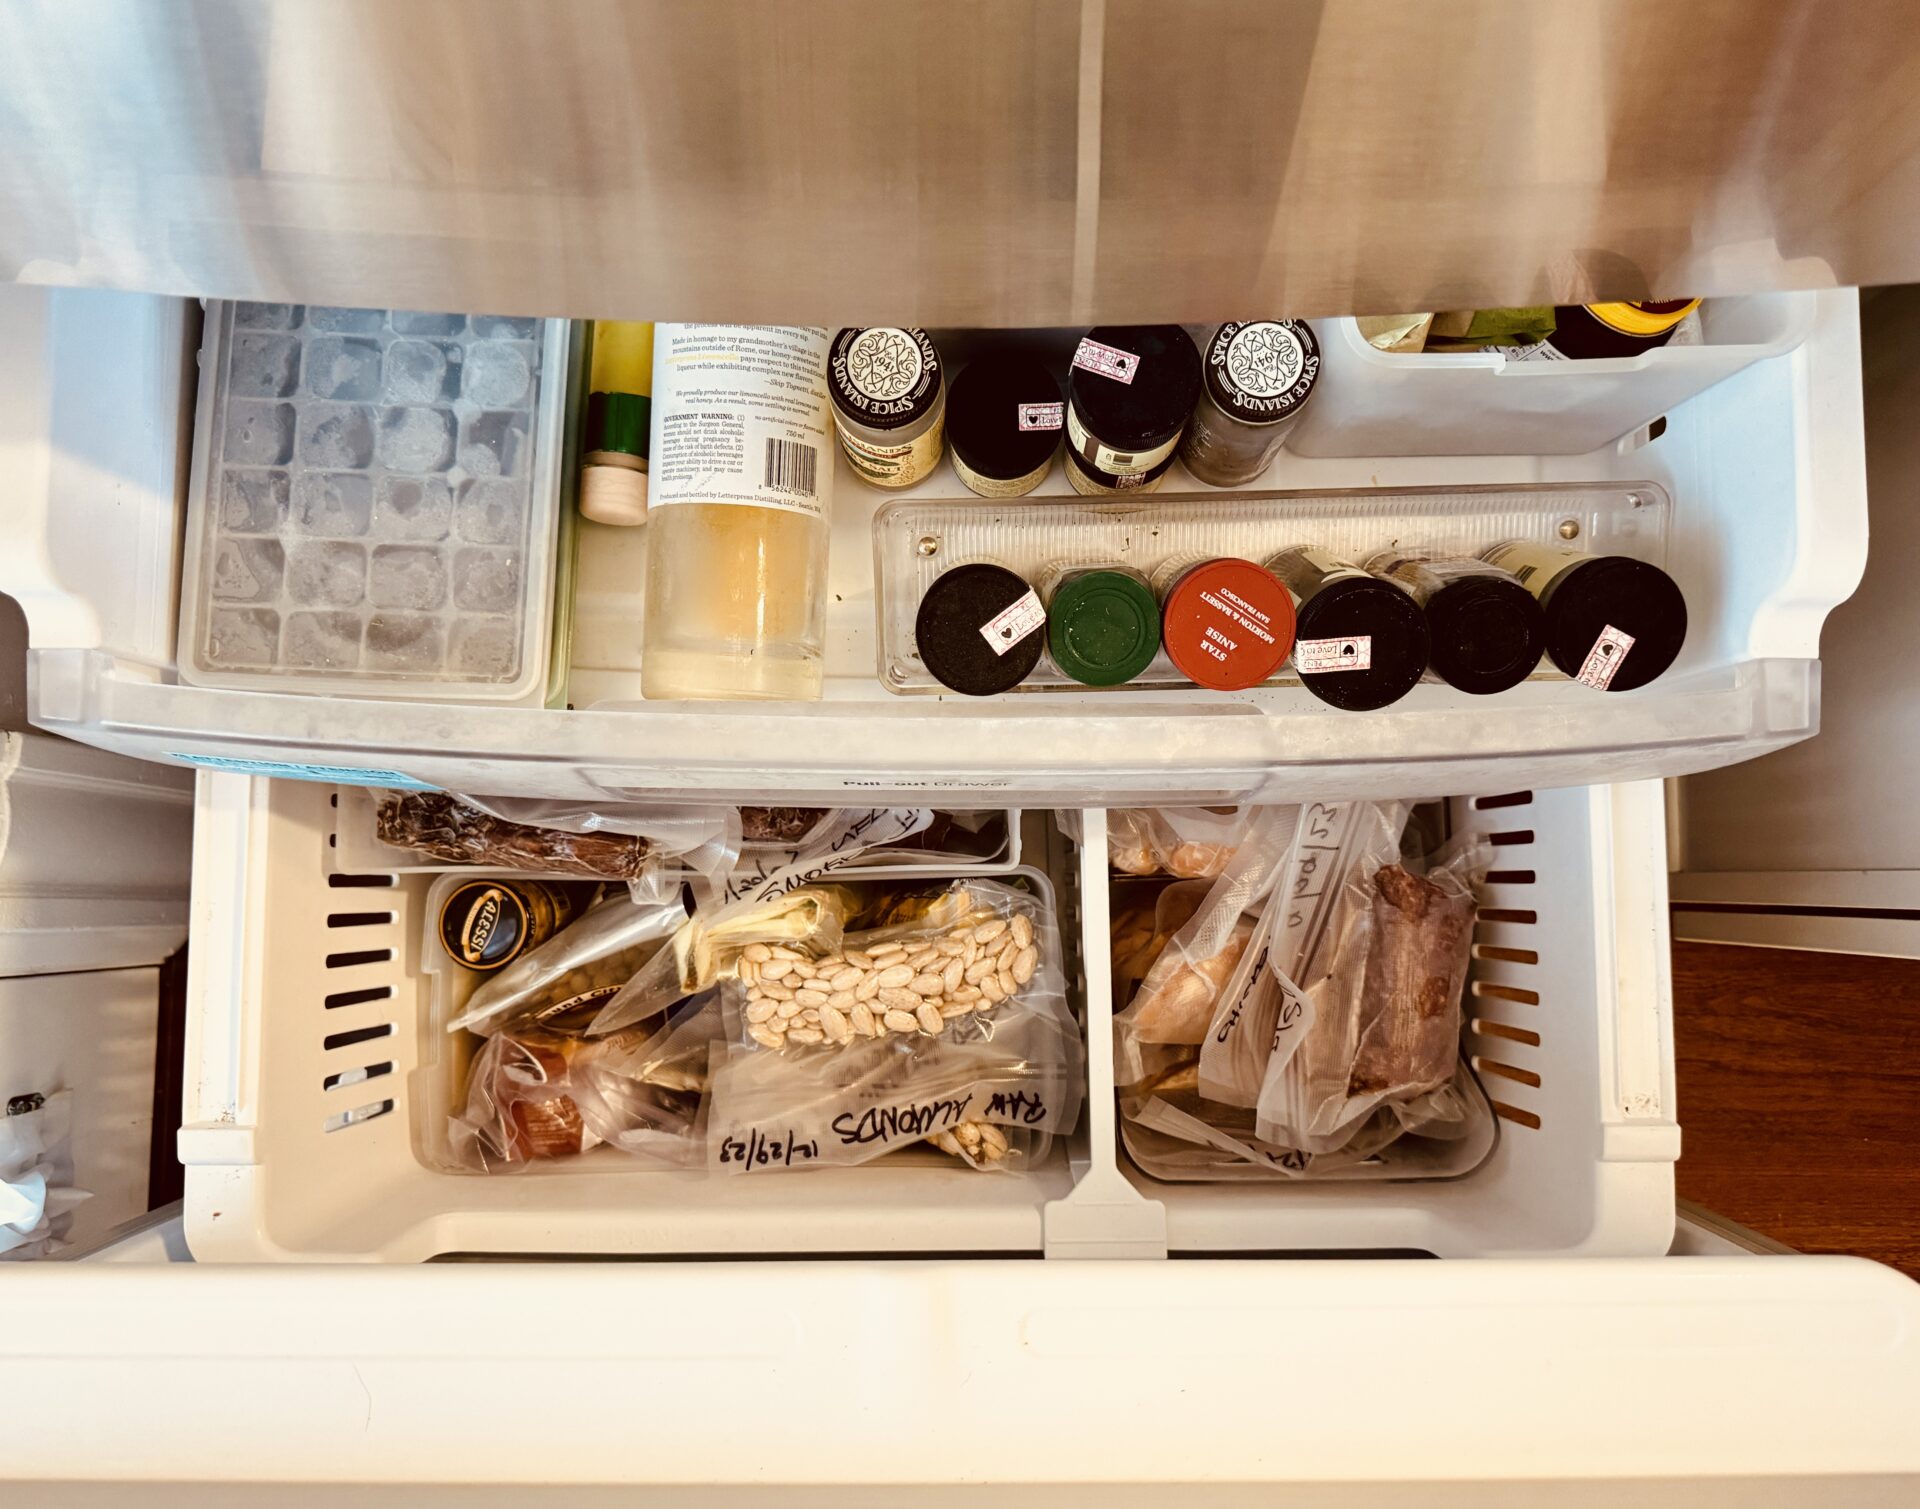 Keeping my freezer inventory in YNAB